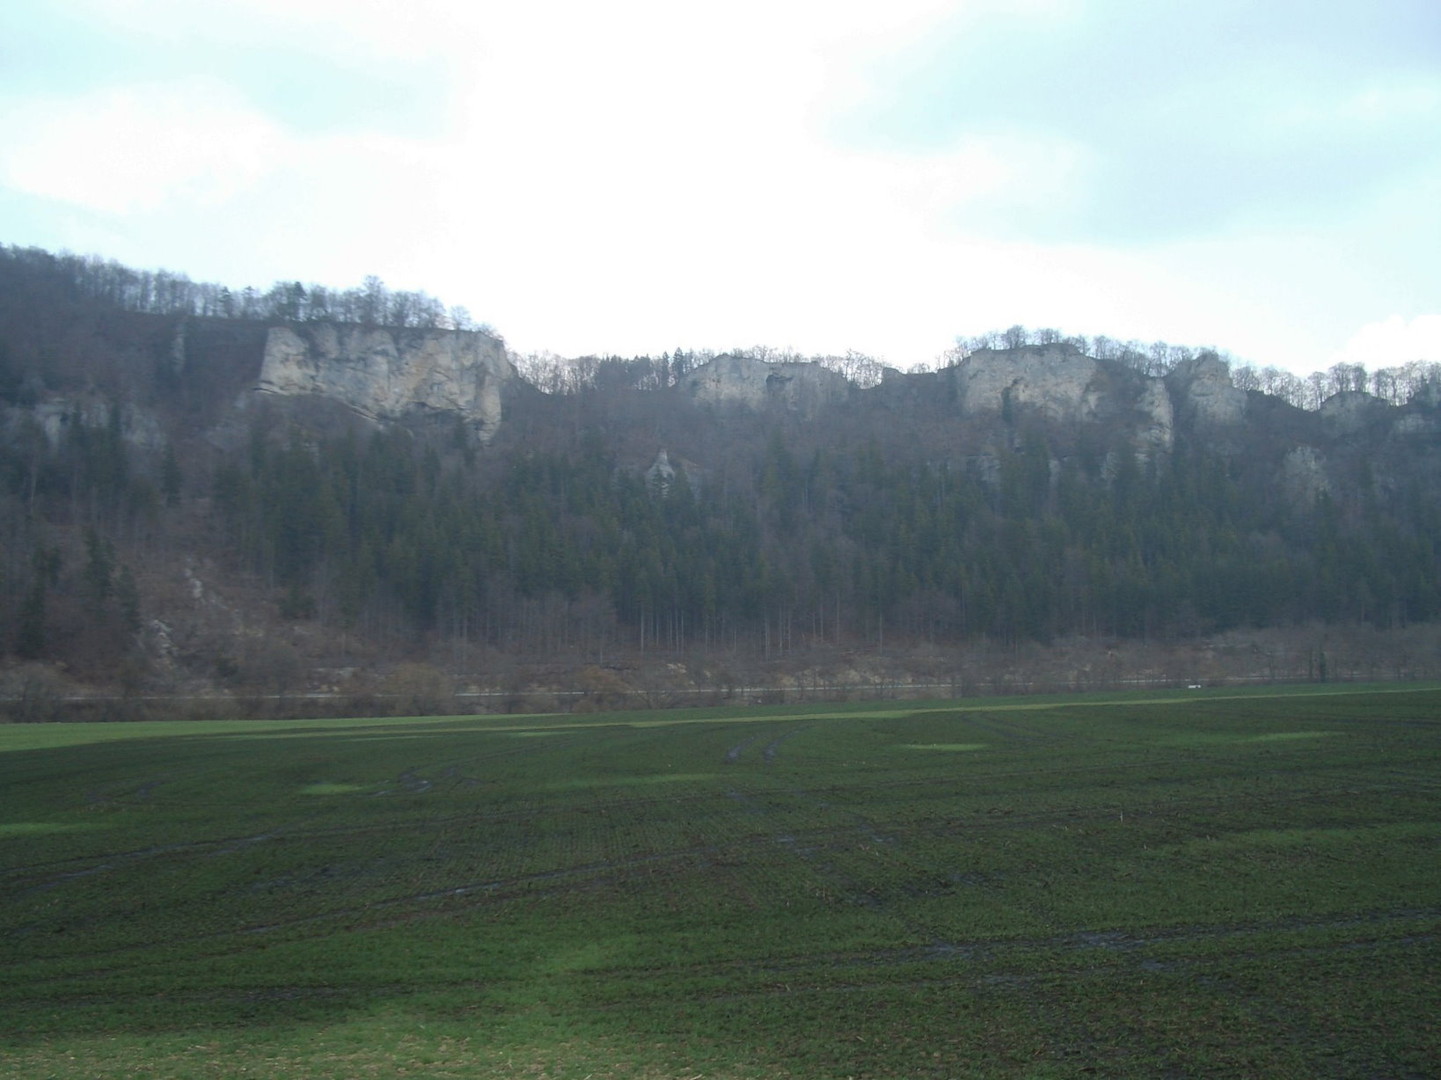 Donautal bei Beuron